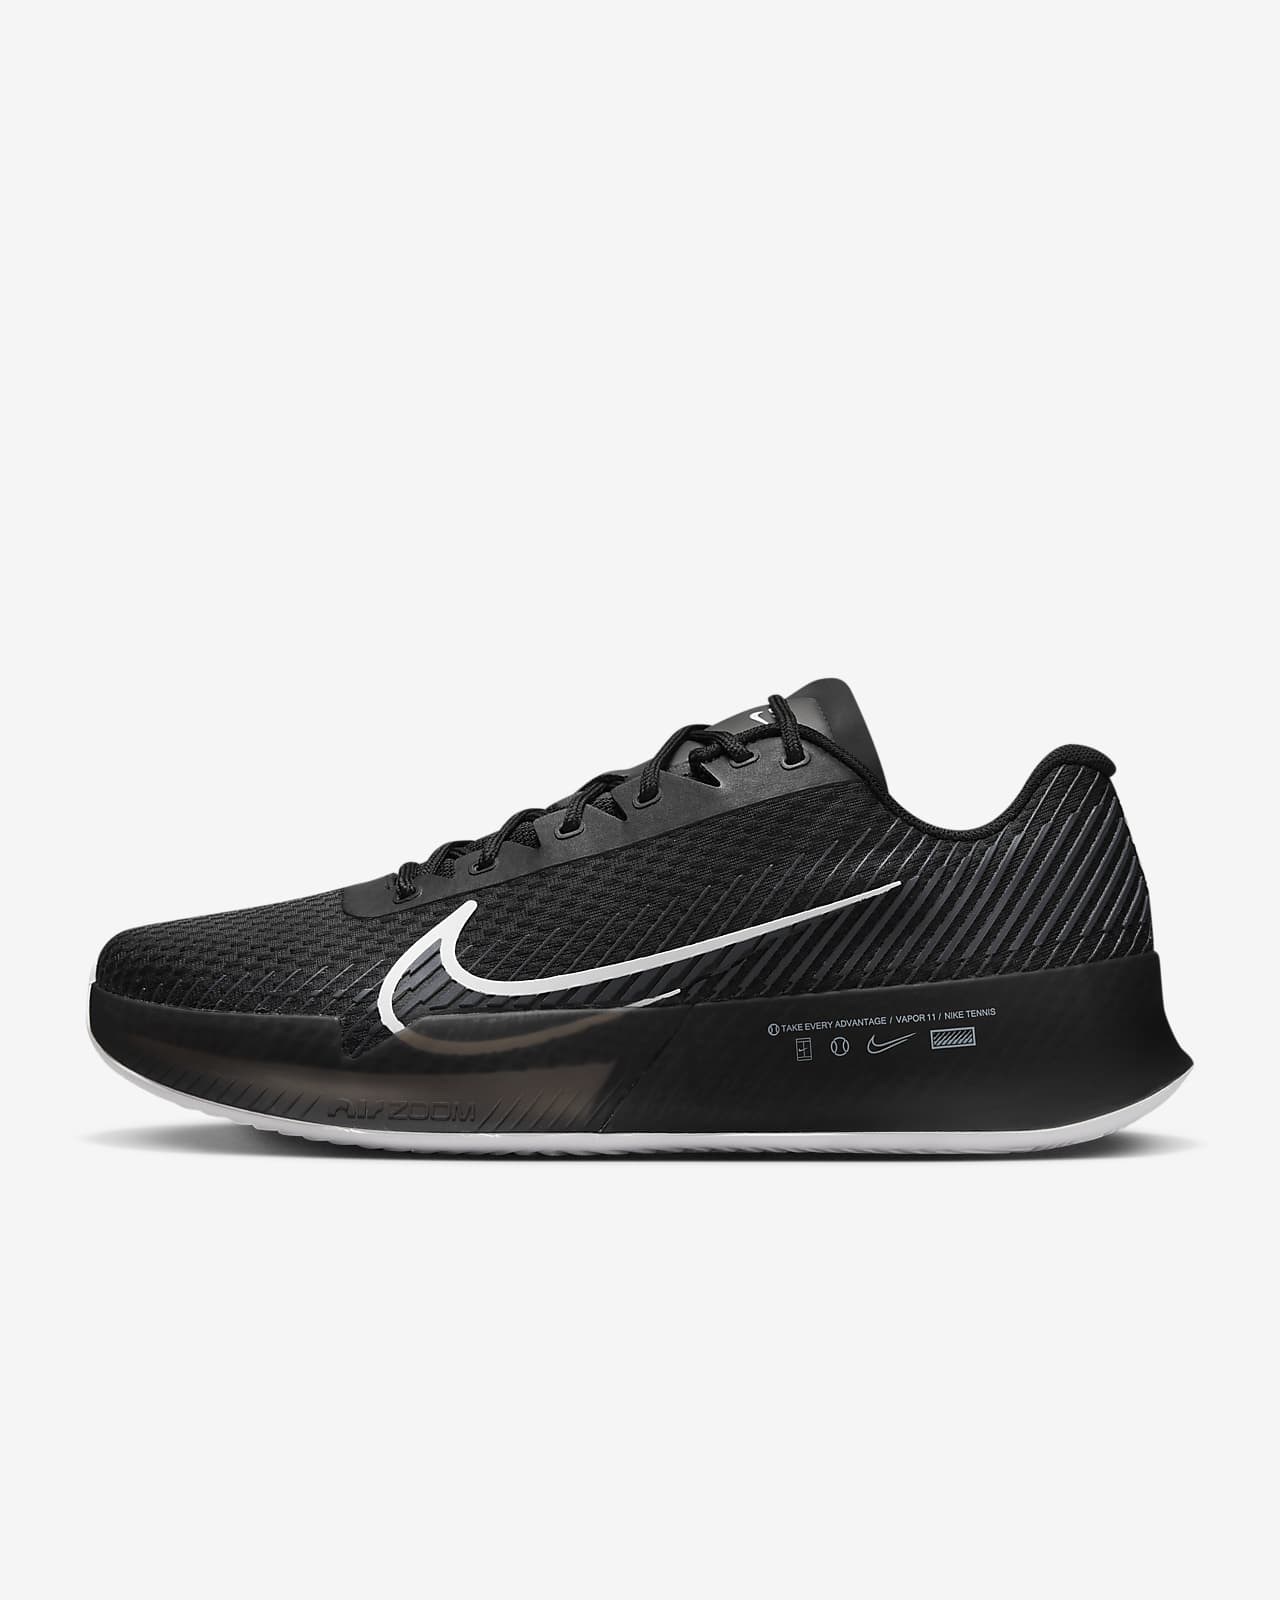 NikeCourt Air Zoom Vapor 11 Toprak Kort Erkek Tenis Ayakkabısı